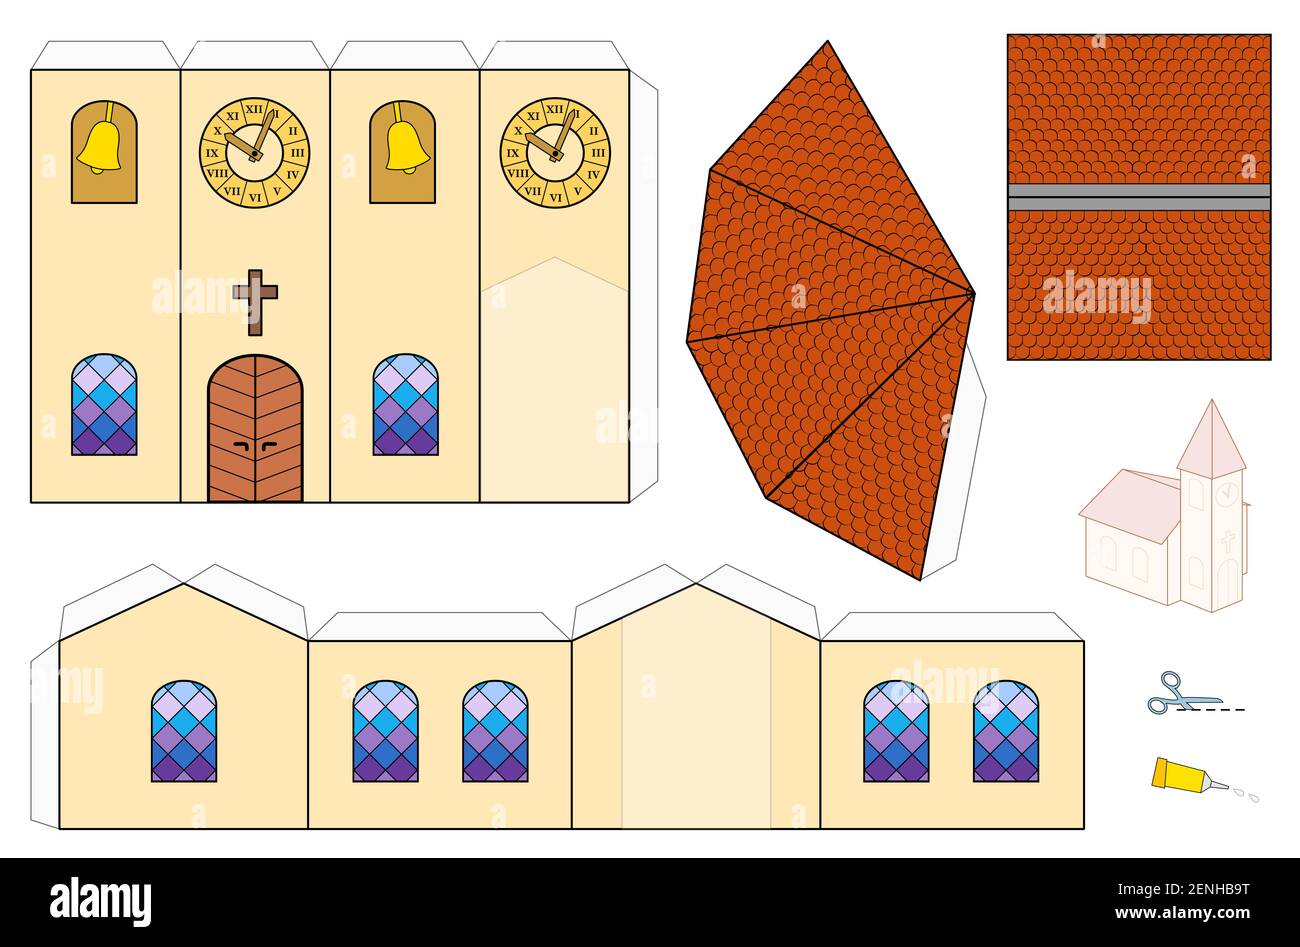 Modèle d'église, modèle d'artisanat en papier. Feuille de découpe pour faire une église modèle 3D simple avec des fenêtres colorées, beffroi, tour horloge et bardeaux. Banque D'Images